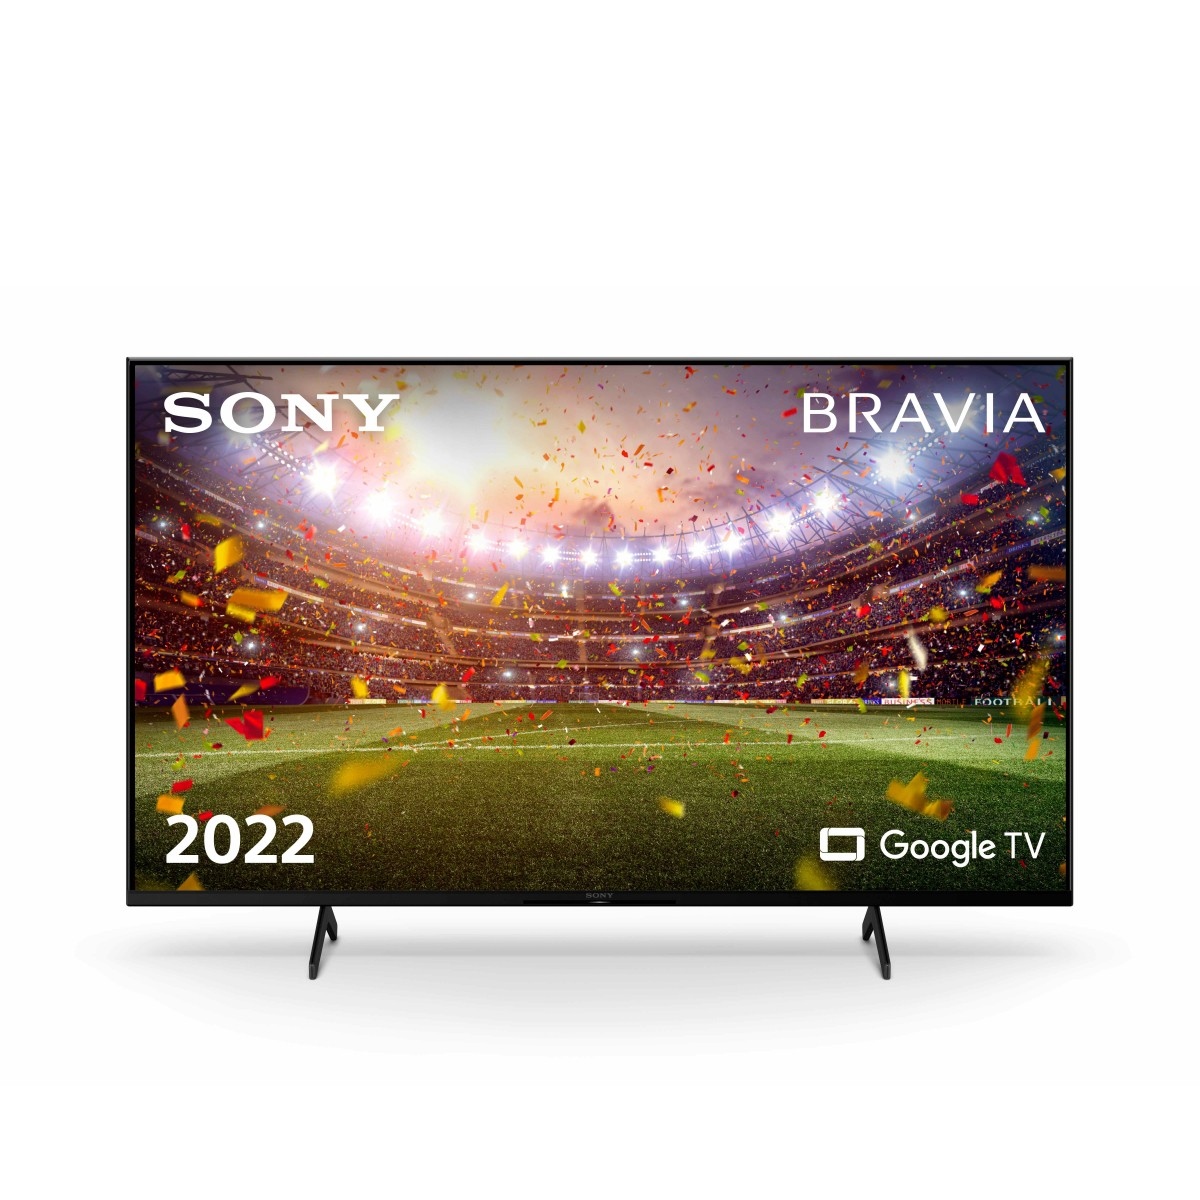 Sony Bravia TV 65" LED 4K